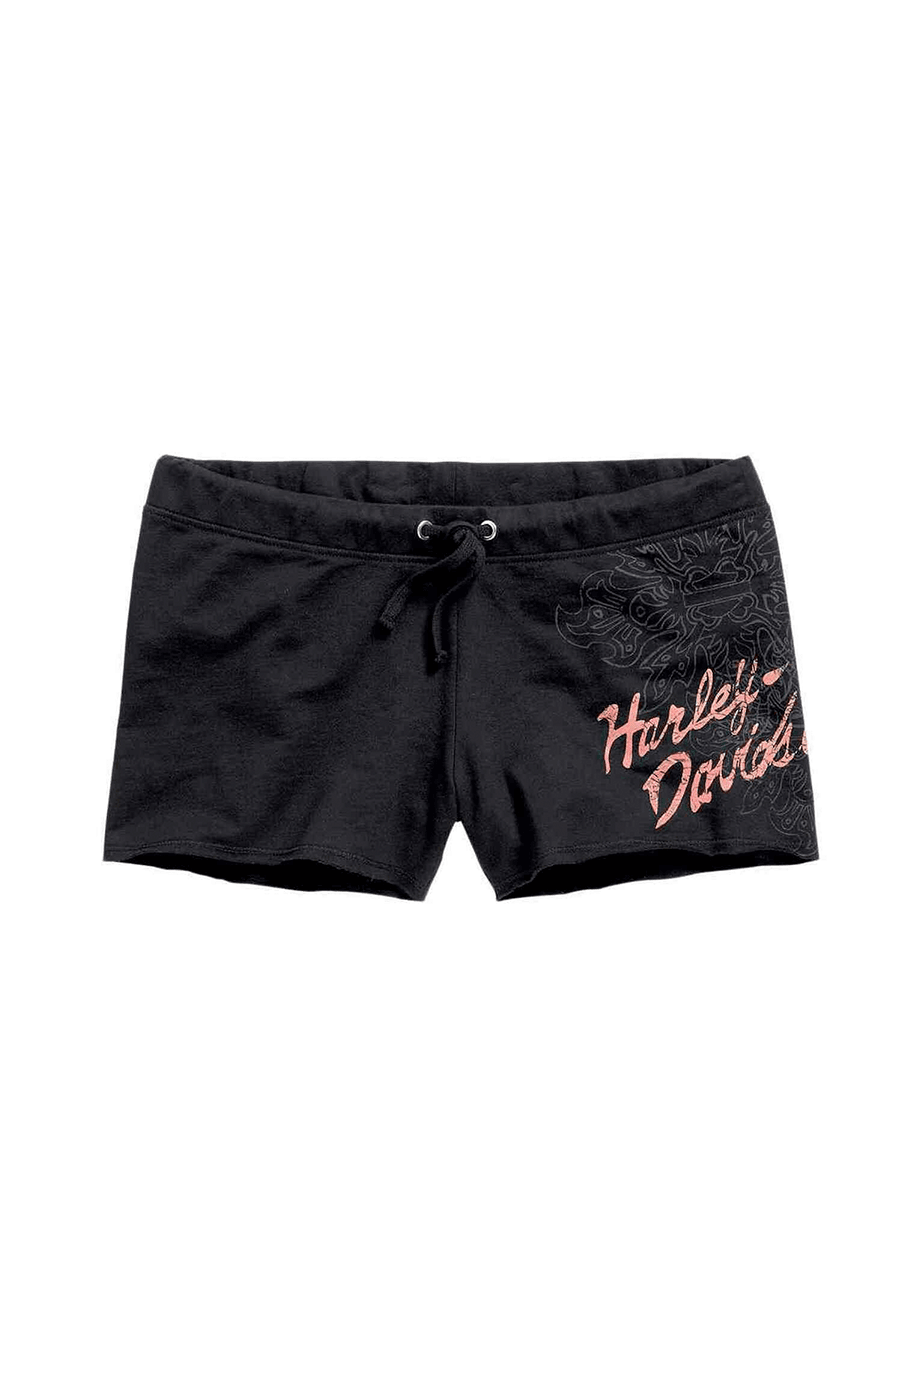 Harley-Davidson® Women's Burst Bar & Shield Sleep Shorts